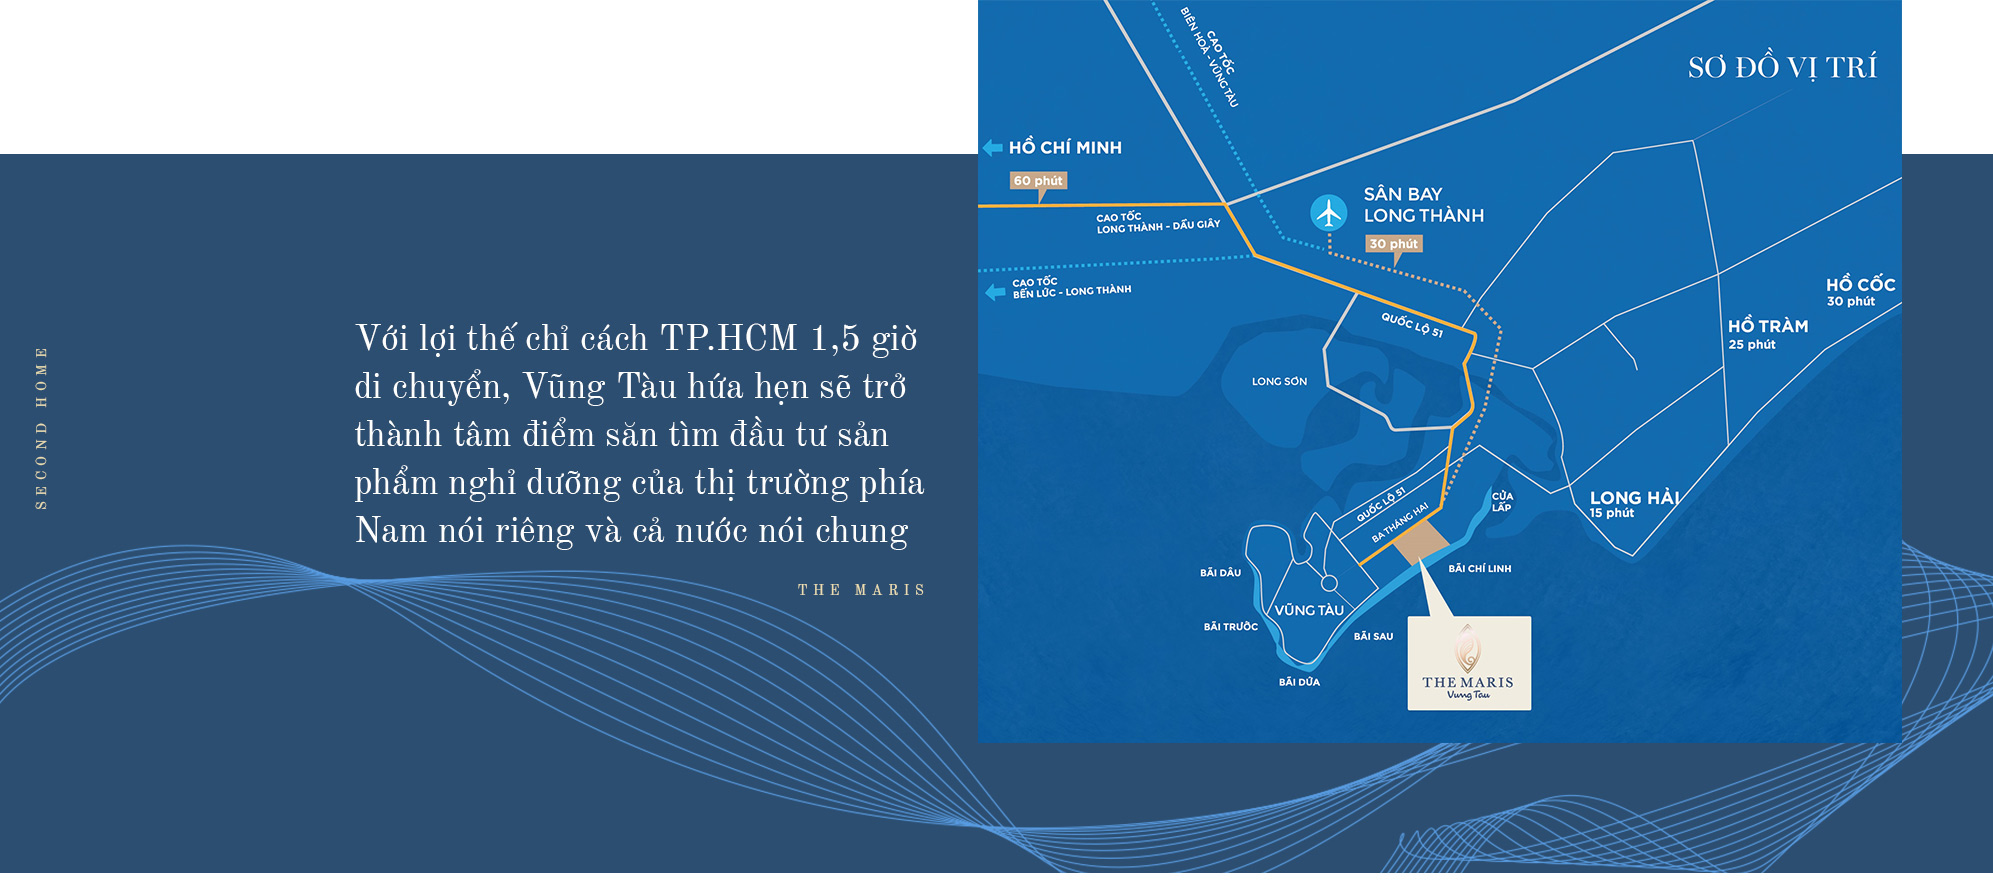 Chuỗi giá trị kiêu hãnh giúp The Maris vươn xa trên bản đồ du lịch Việt Nam - Ảnh 22.